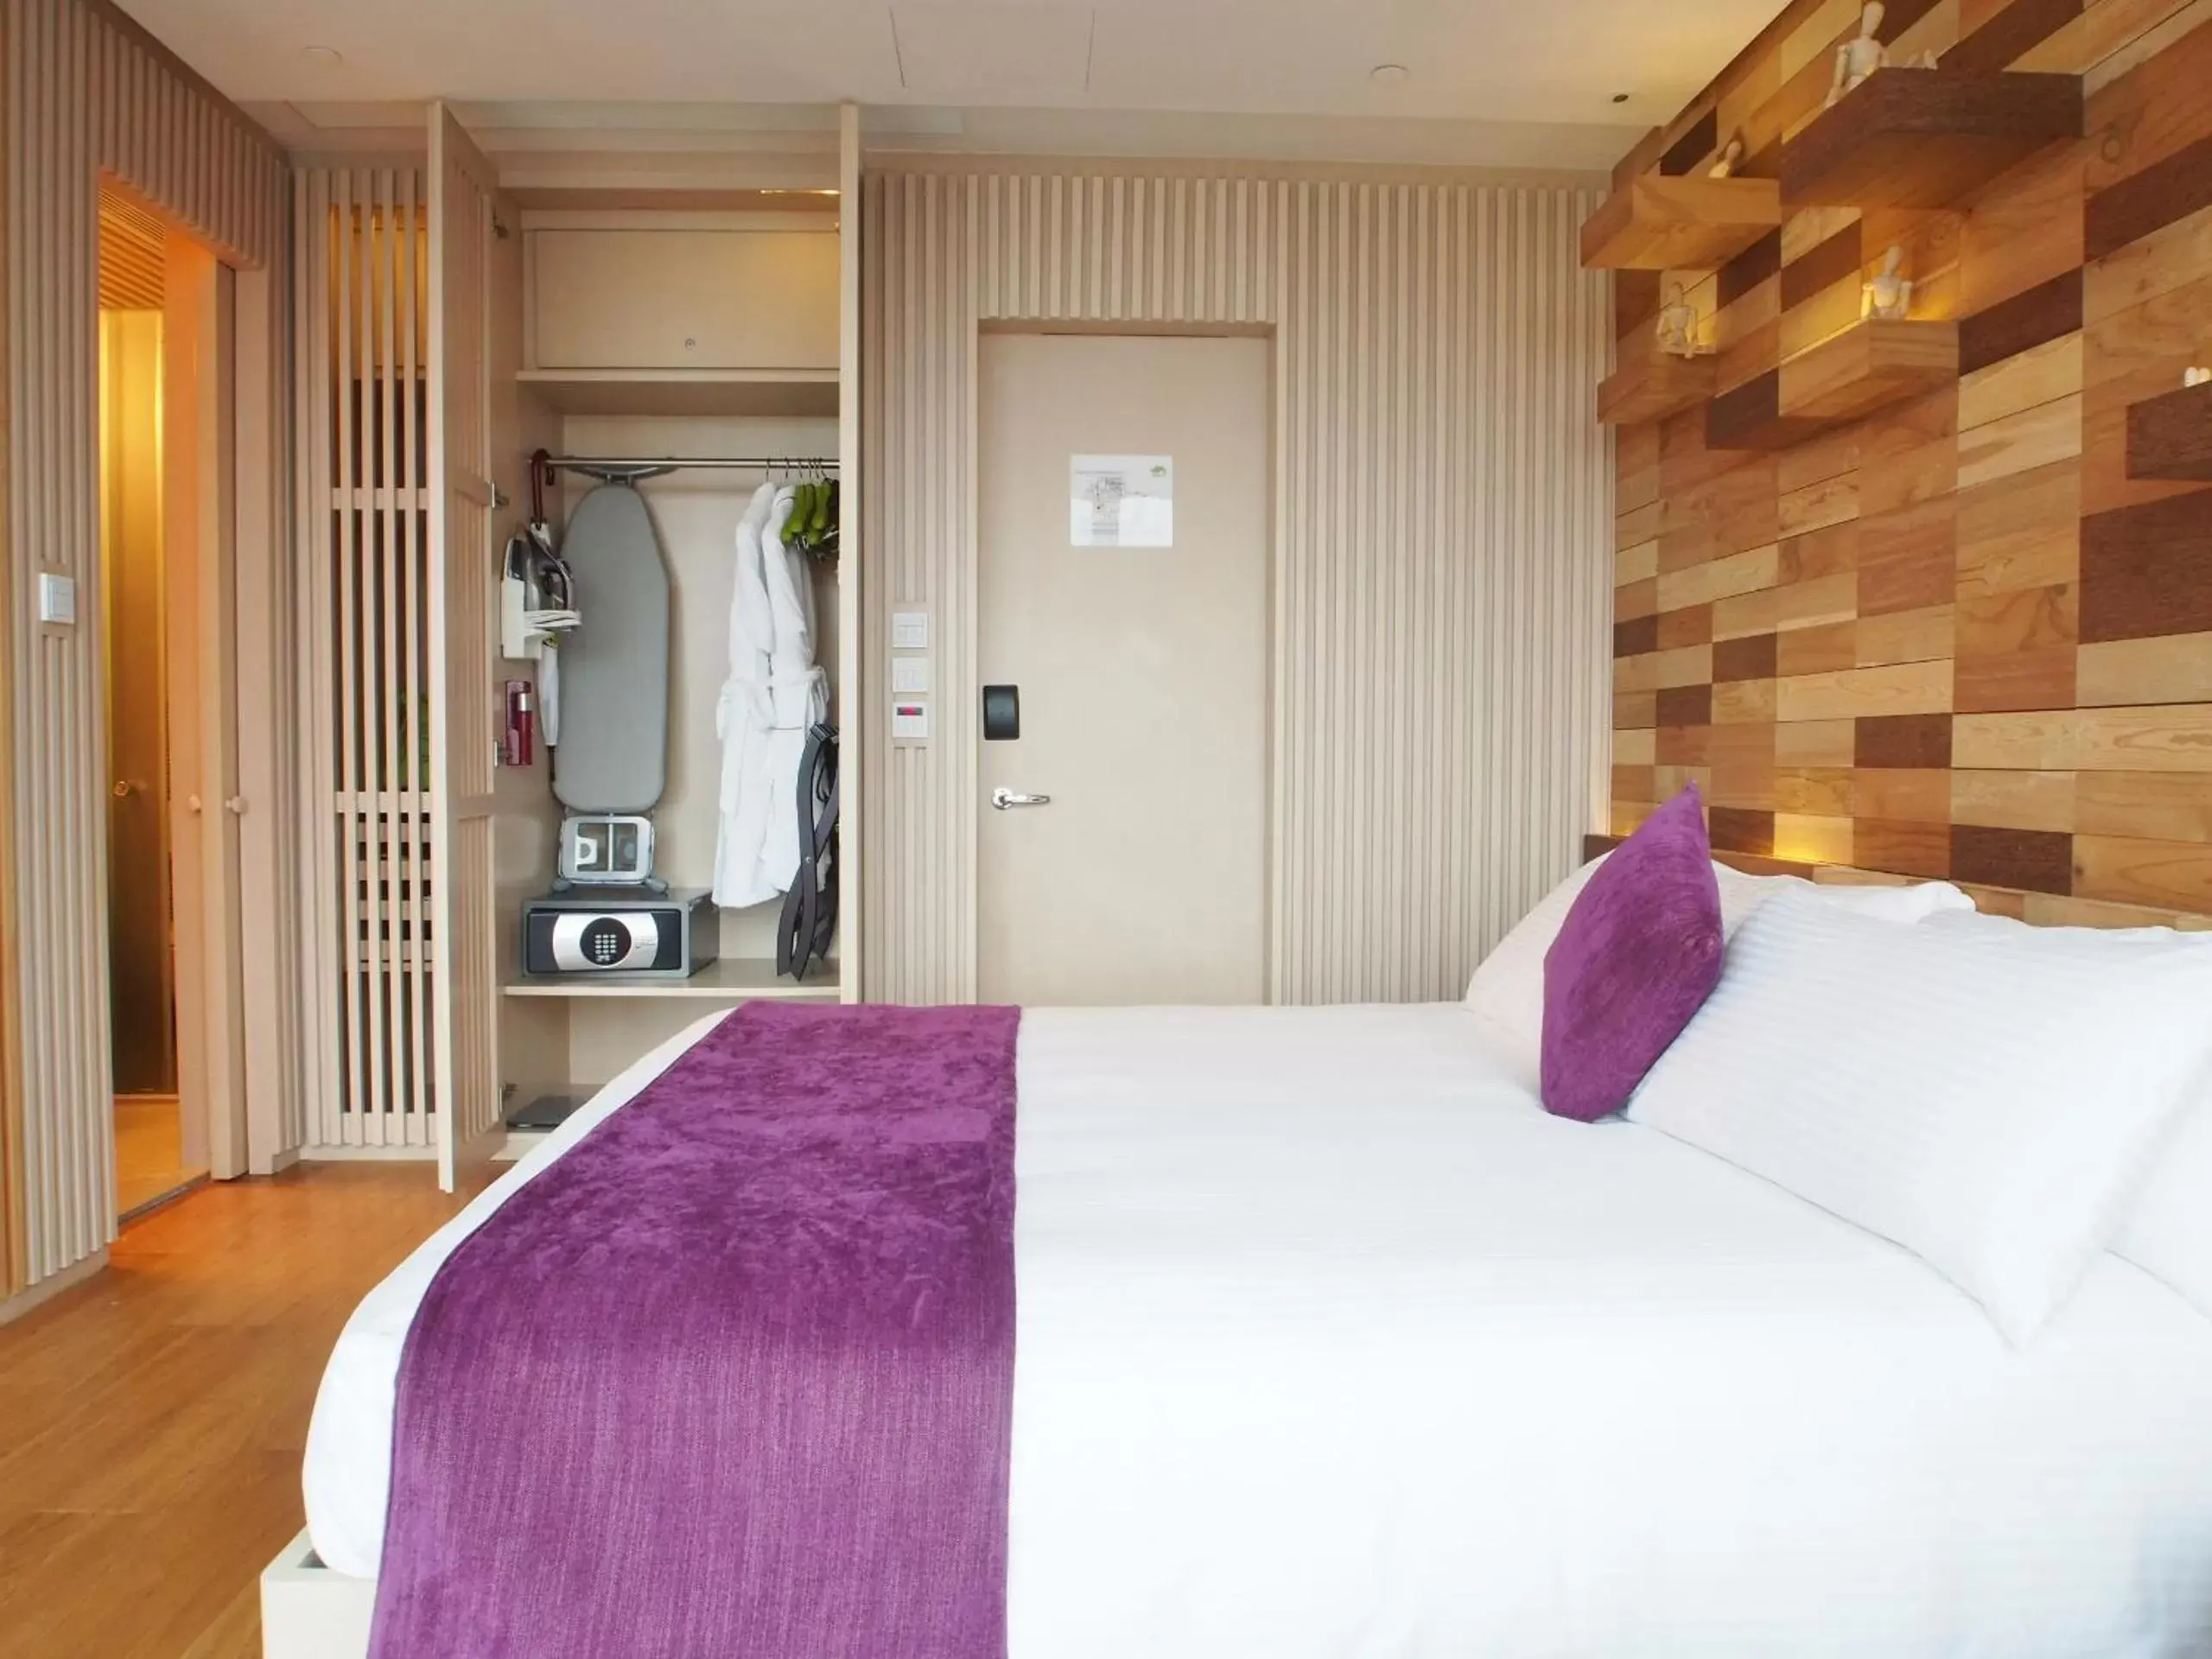 Bed in Hotel Madera Hong Kong